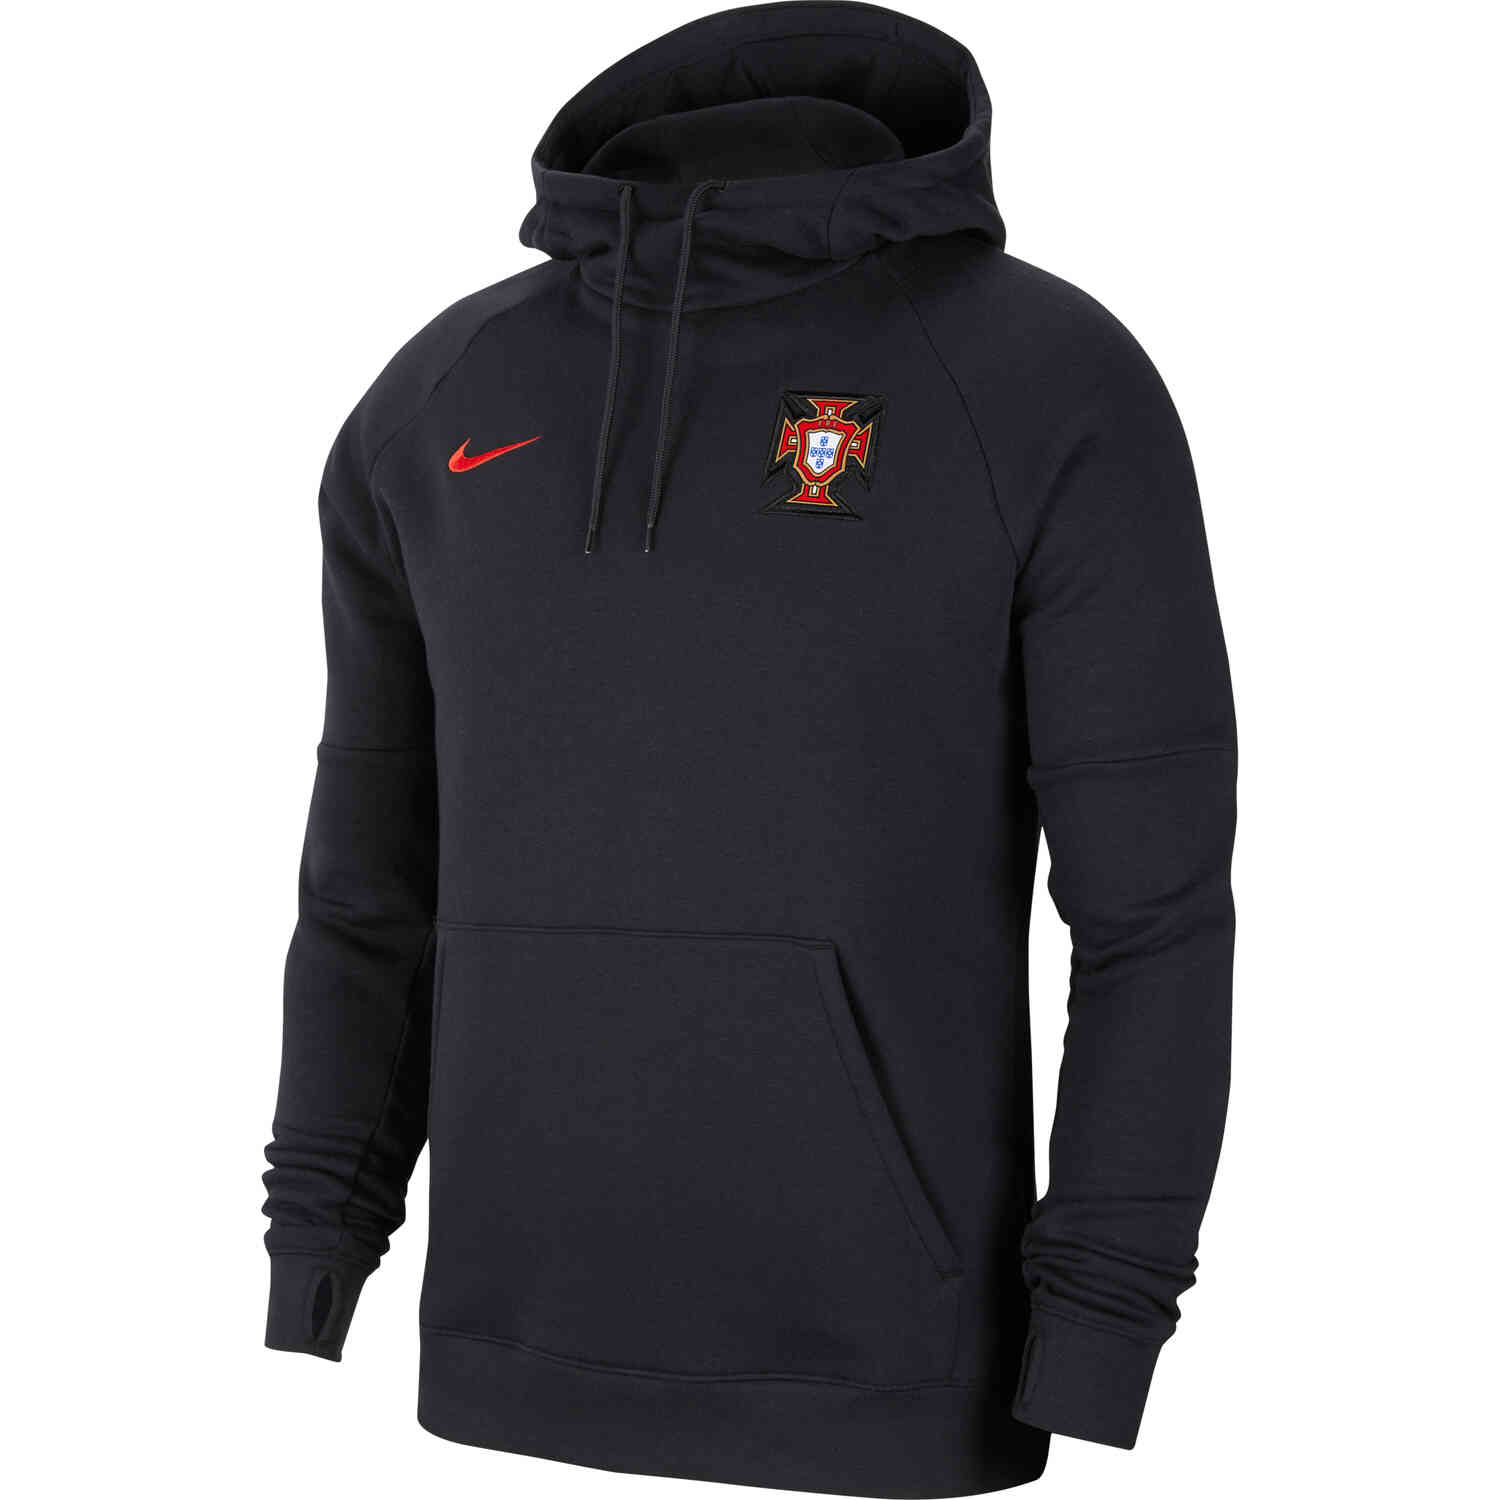 Nike Portugal Pullover Fleece Hoodie - Black & Sport Red - SoccerPro